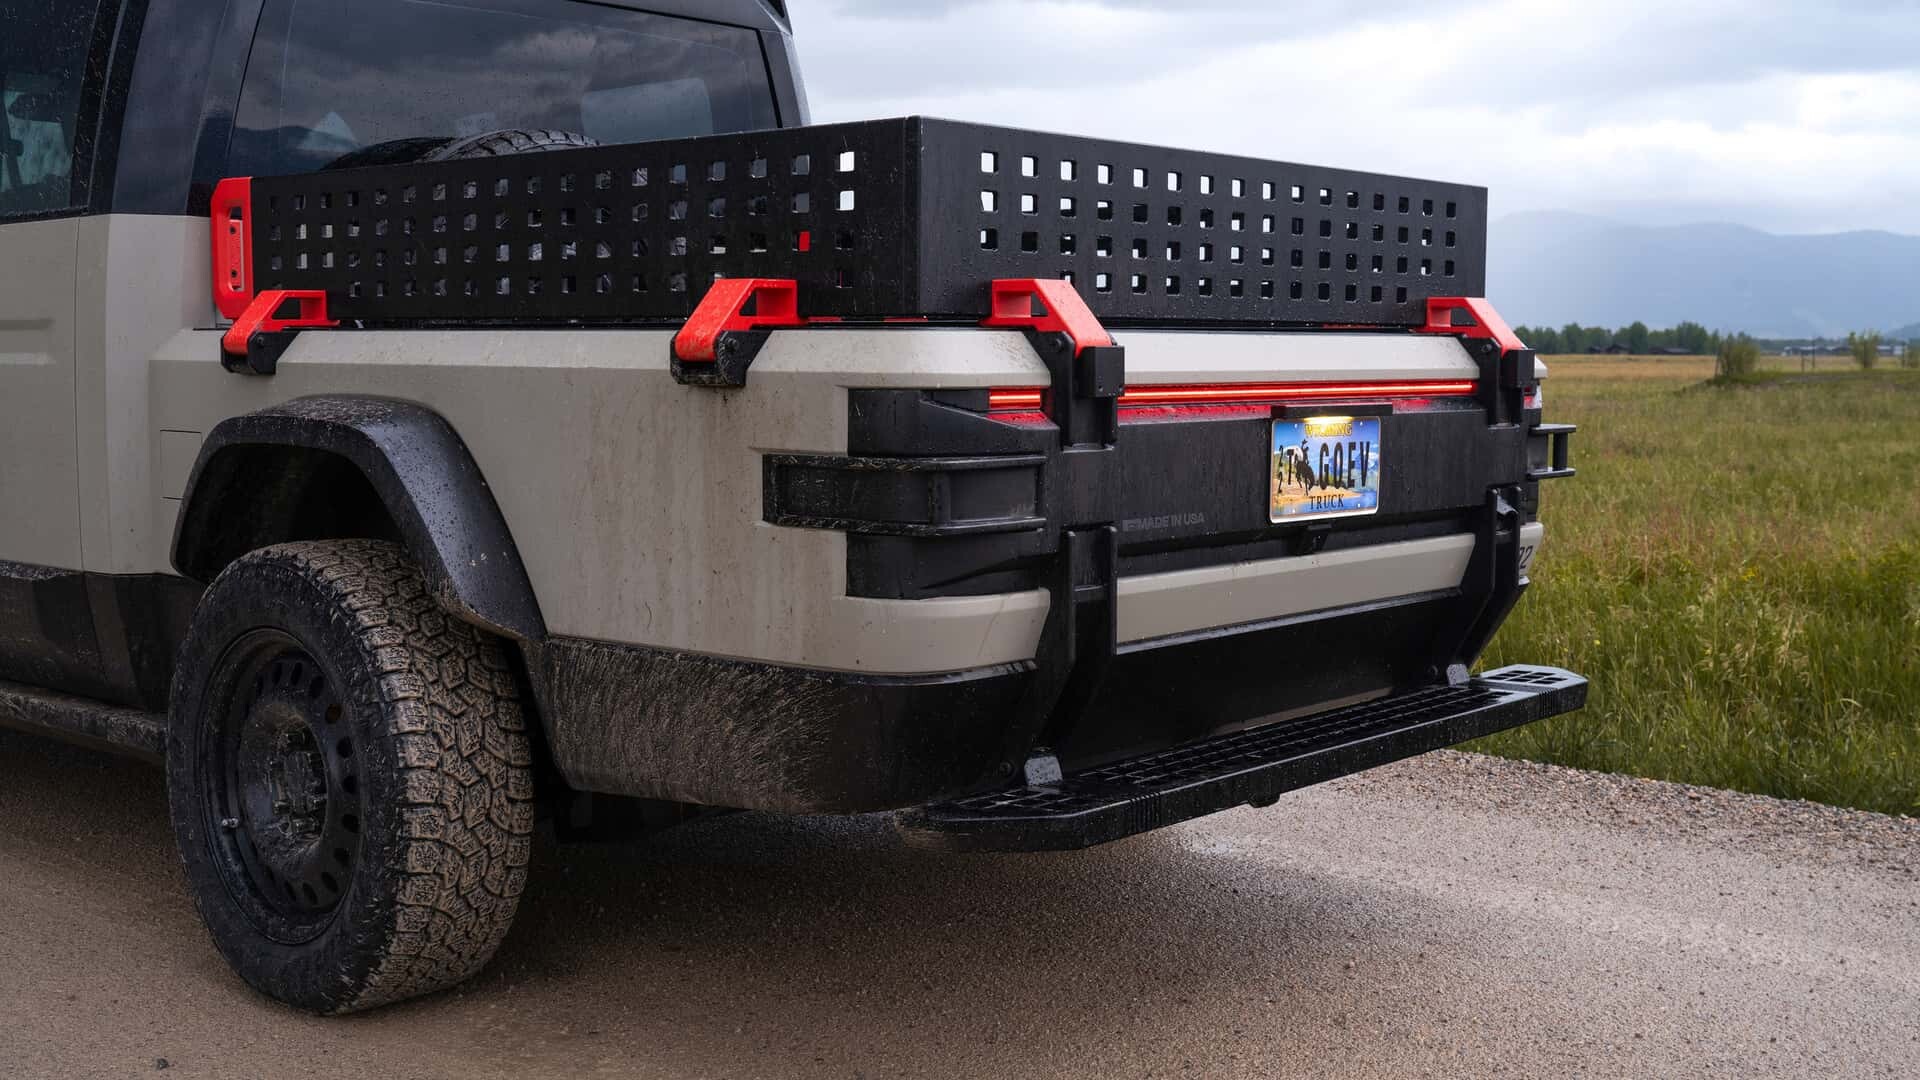 Nova Jeep® Gladiator, a inovadora pick-up entre tradição e futuro